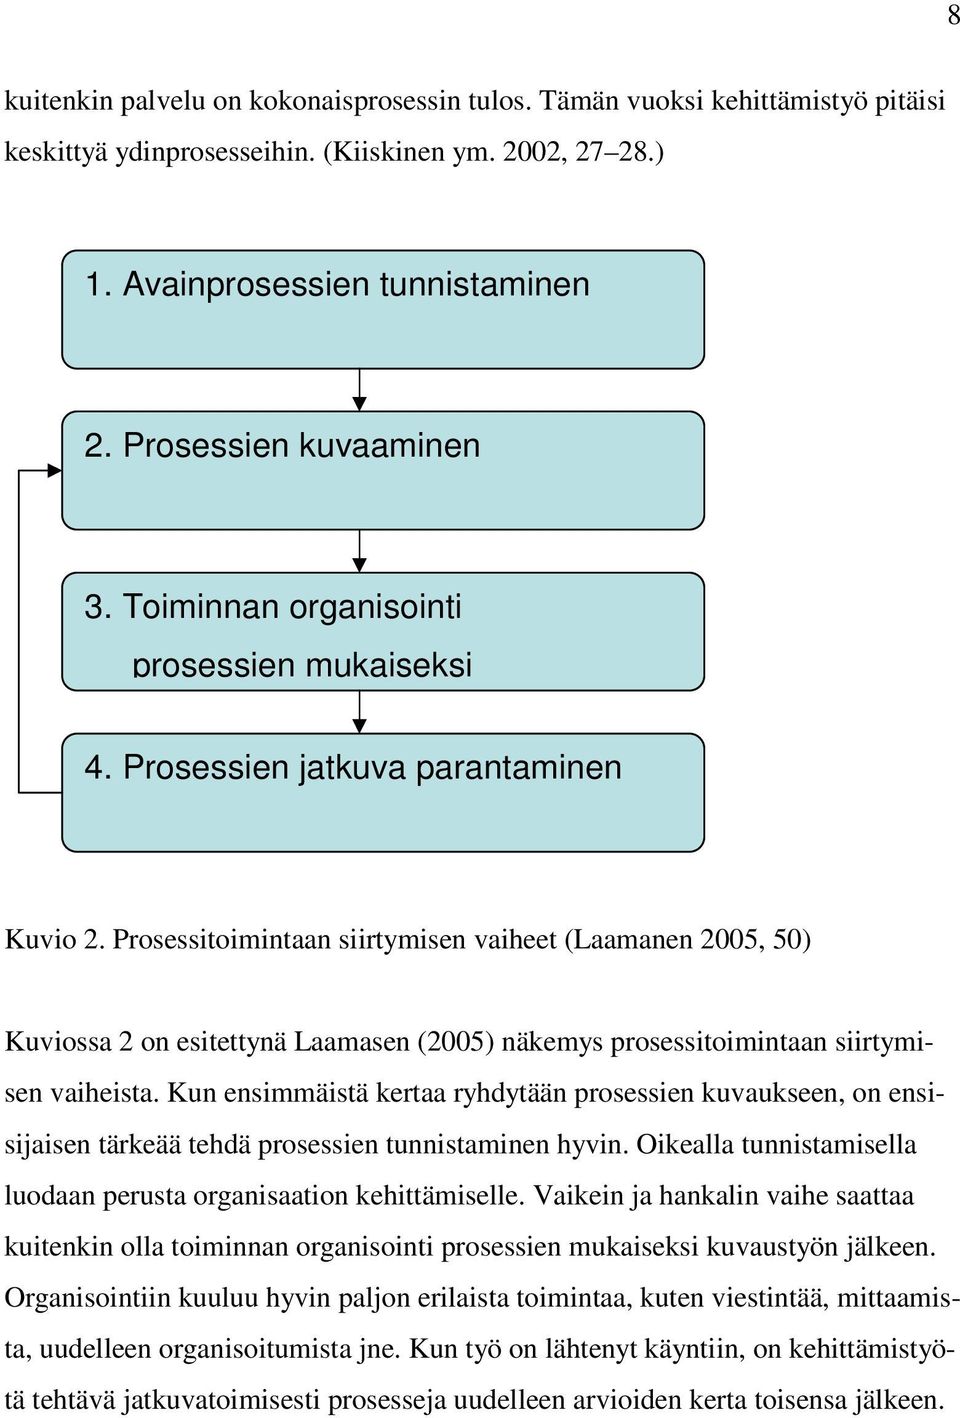 Prosessitoimintaan siirtymisen vaiheet (Laamanen 2005, 50) Kuviossa 2 on esitettynä Laamasen (2005) näkemys prosessitoimintaan siirtymisen vaiheista.